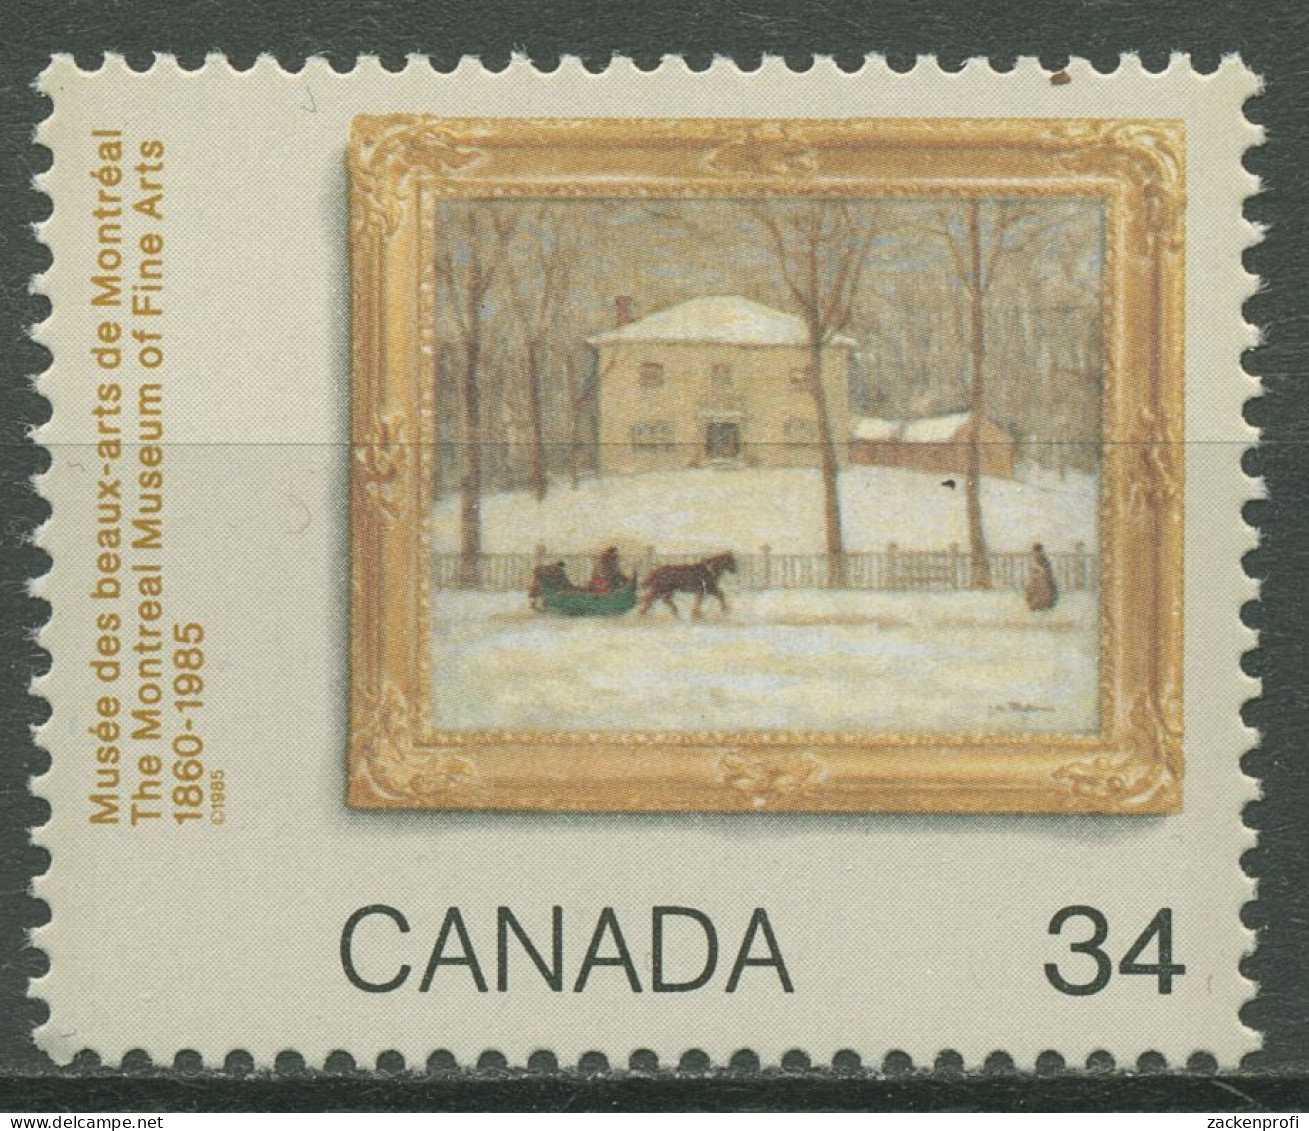 Kanada 1985 Kunstmuseum Montreal Gemälde 985 Postfrisch - Unused Stamps